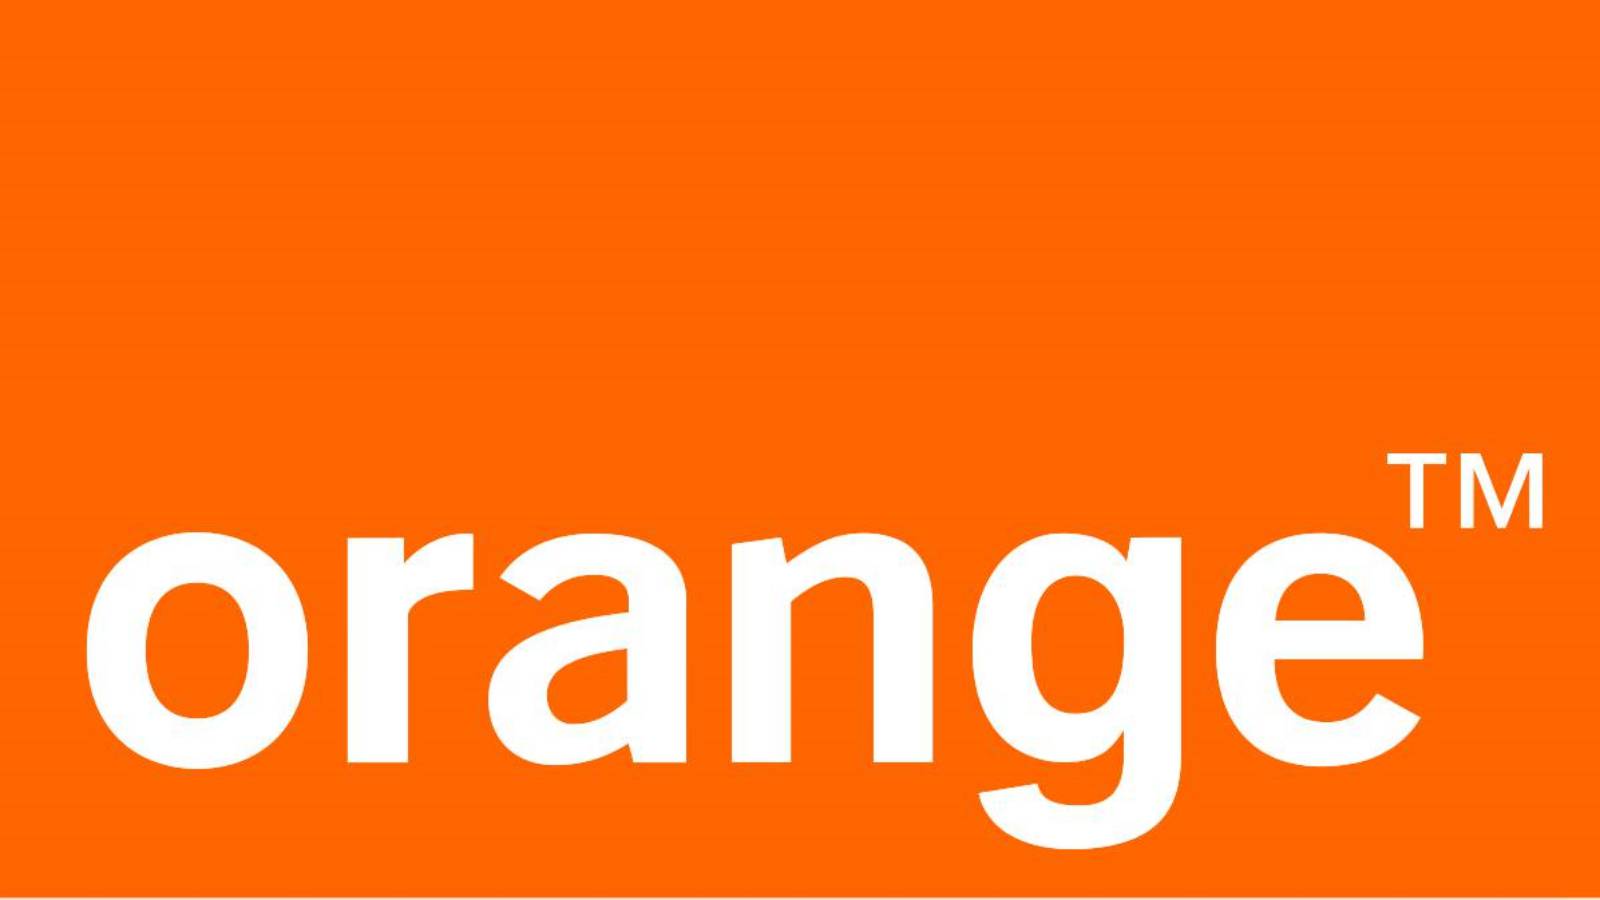 Orangefarbene Unterhaltung